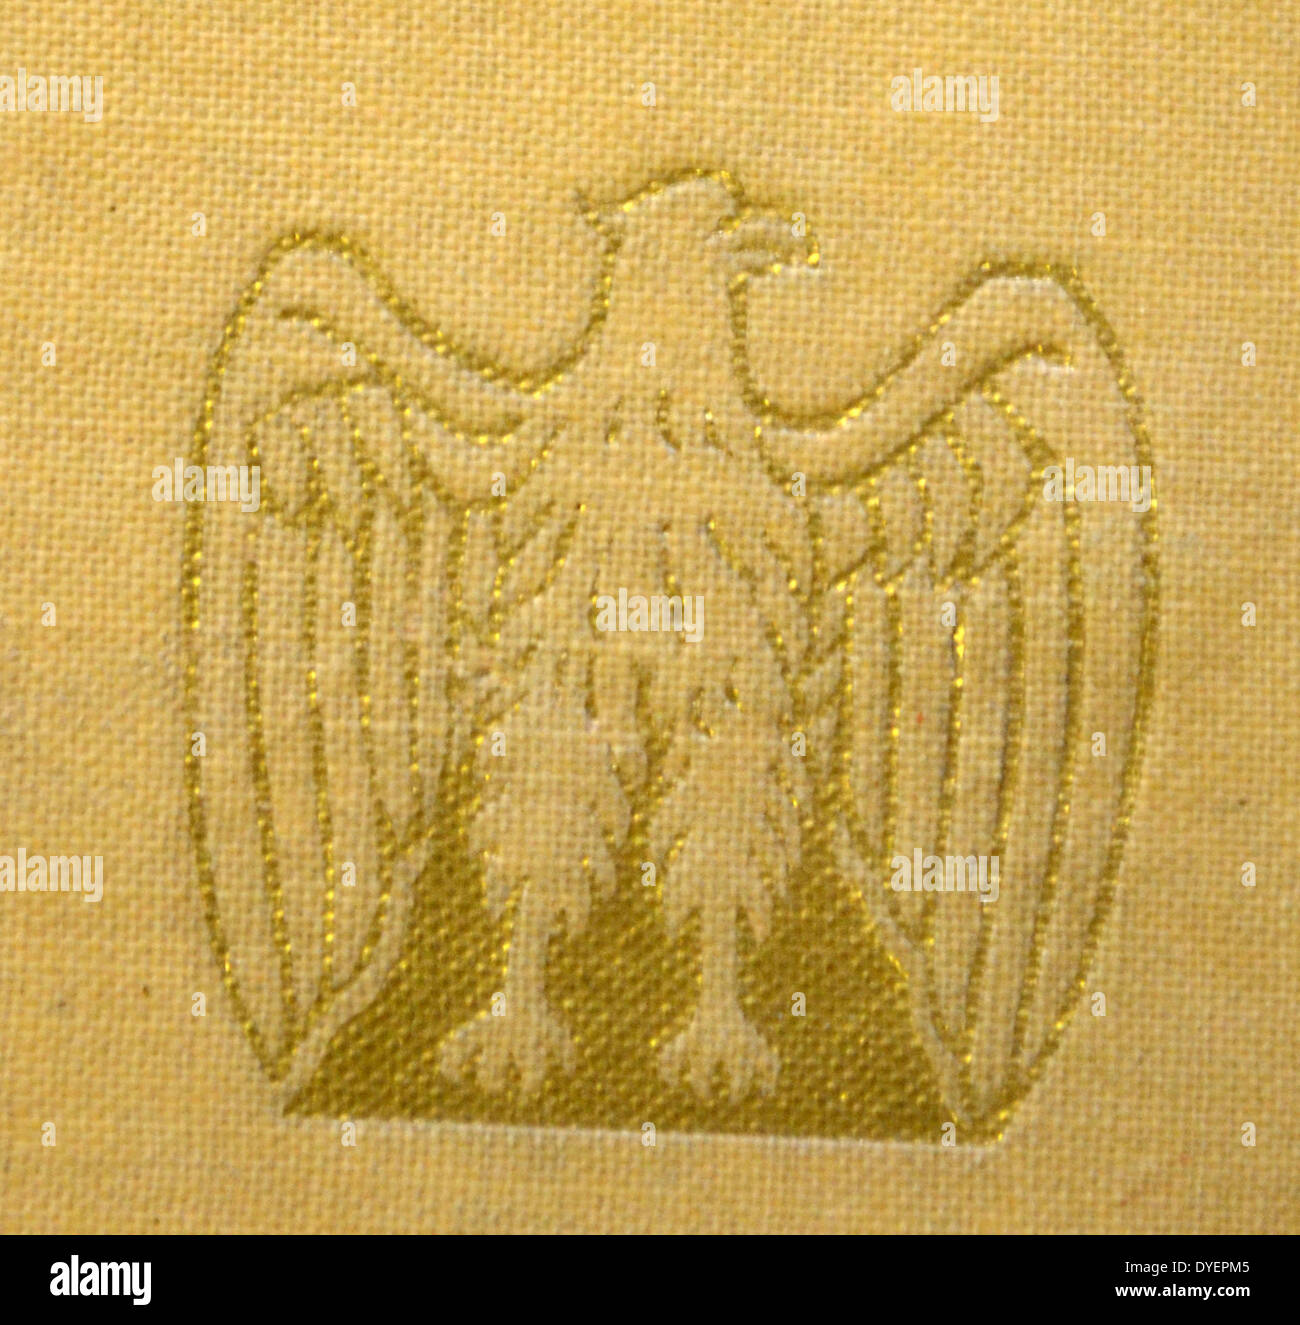 Eagle emblema blasonate in gilt su un libro commemorativo per celebrare l'ascesa del fascismo italiano 1929 Foto Stock